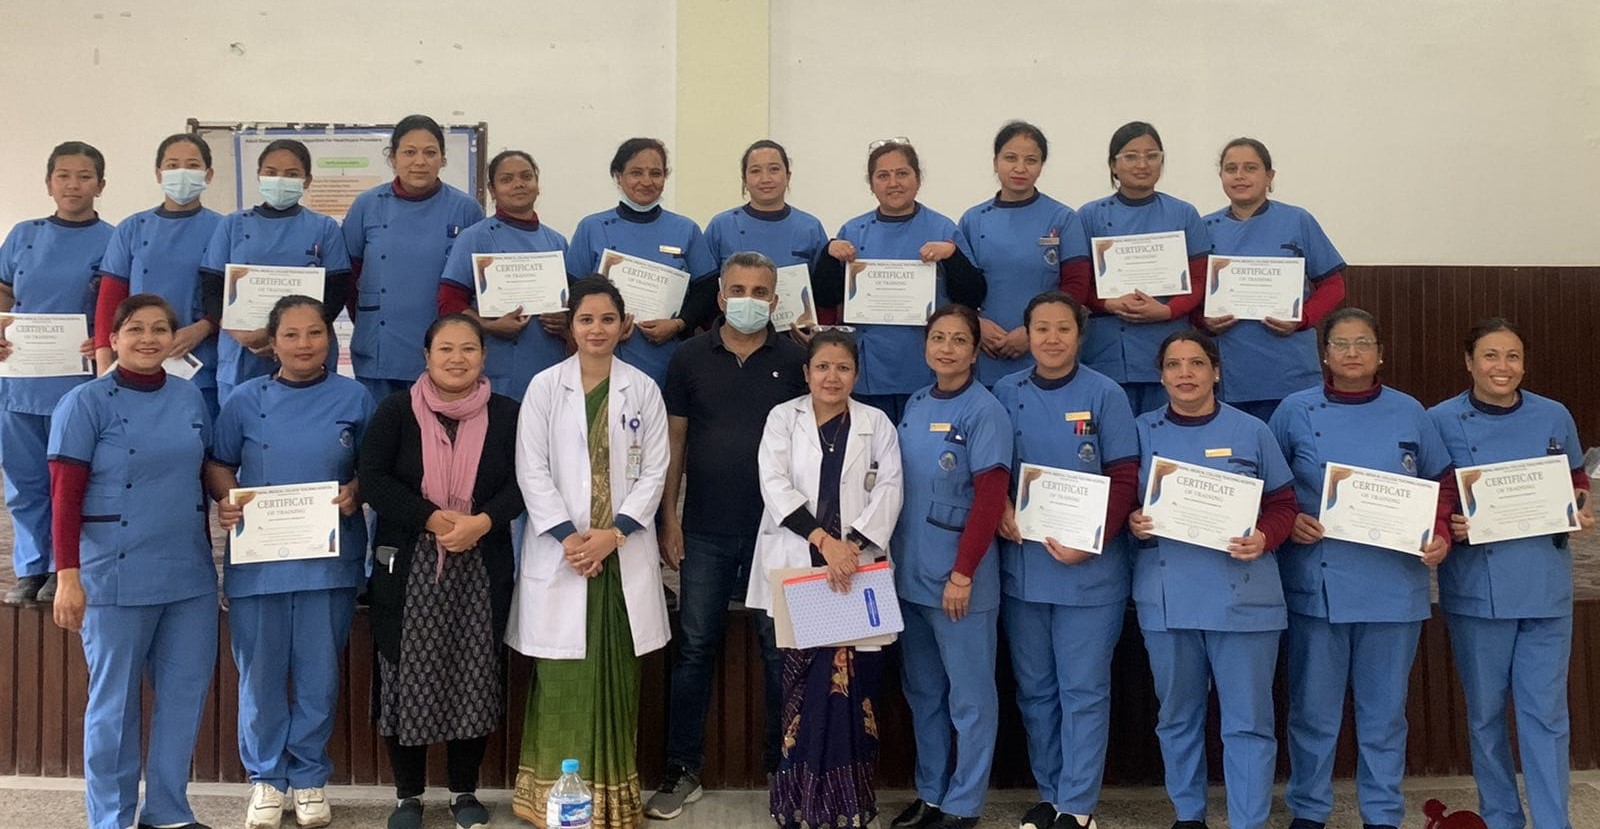 नेपाल मेडिकल कलेजका स्टाफ नर्सहरुलाई लाइफ सपोर्टको तालिम